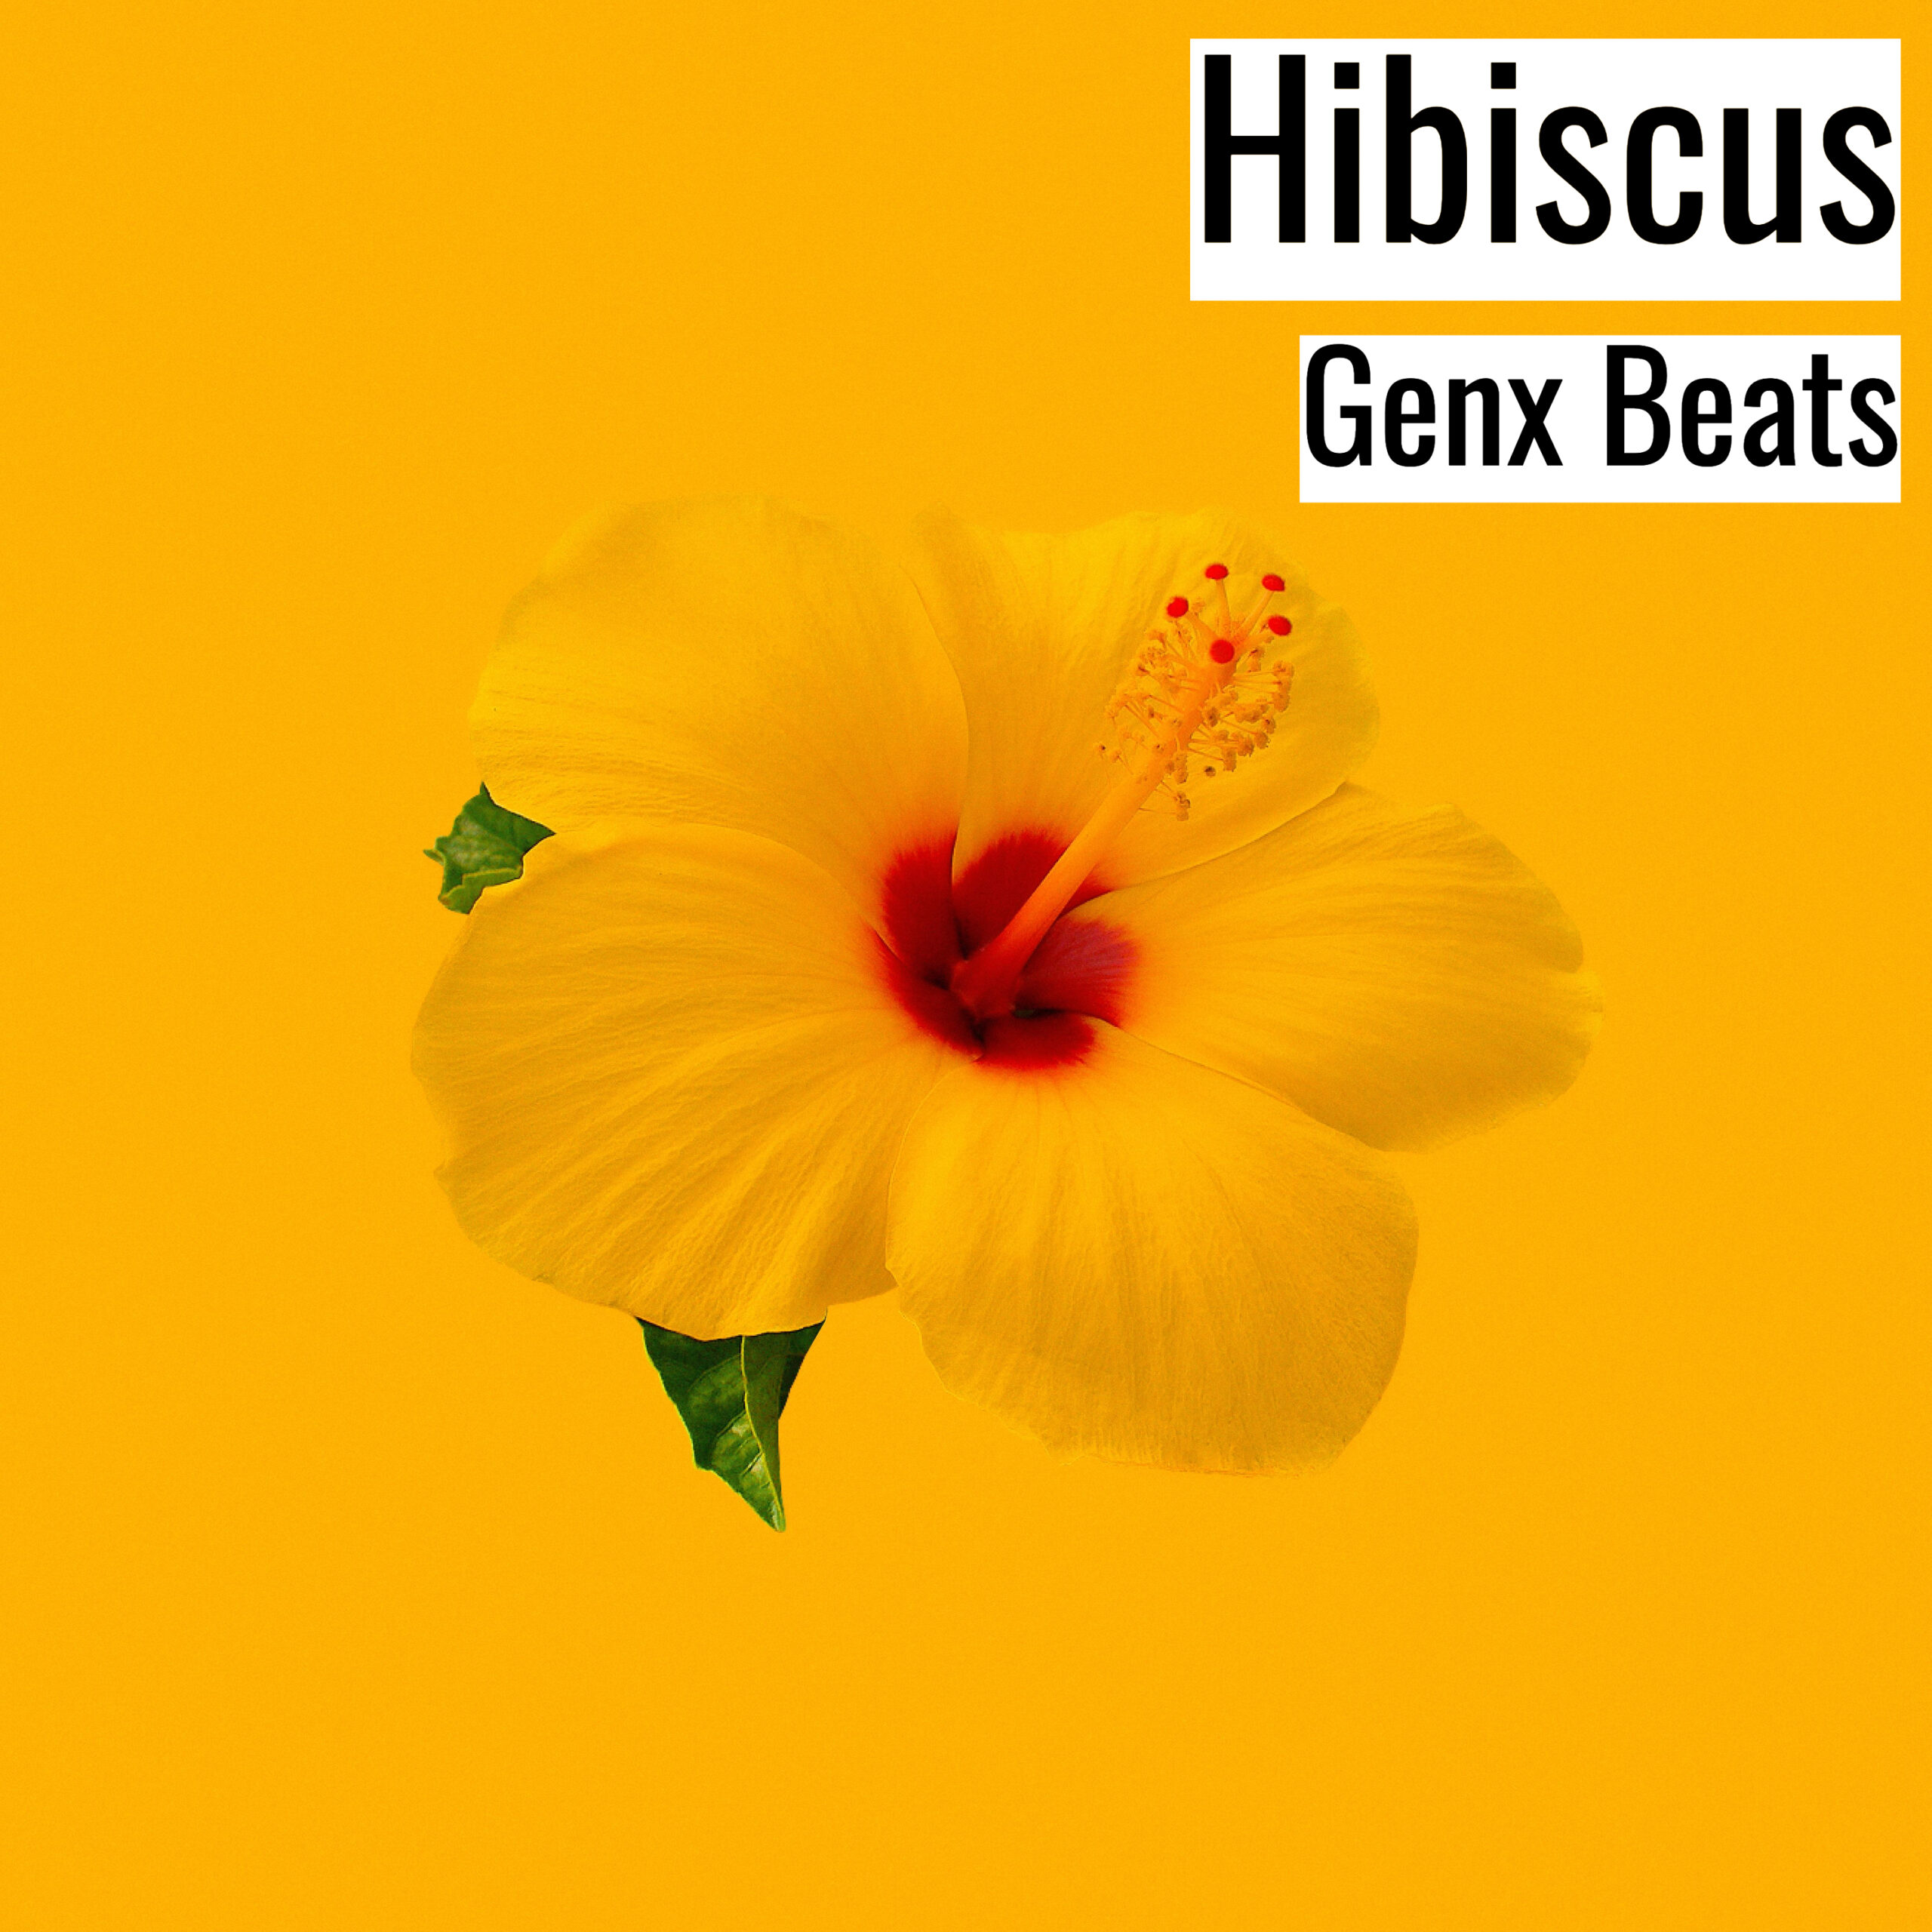 Hibiscus scaled